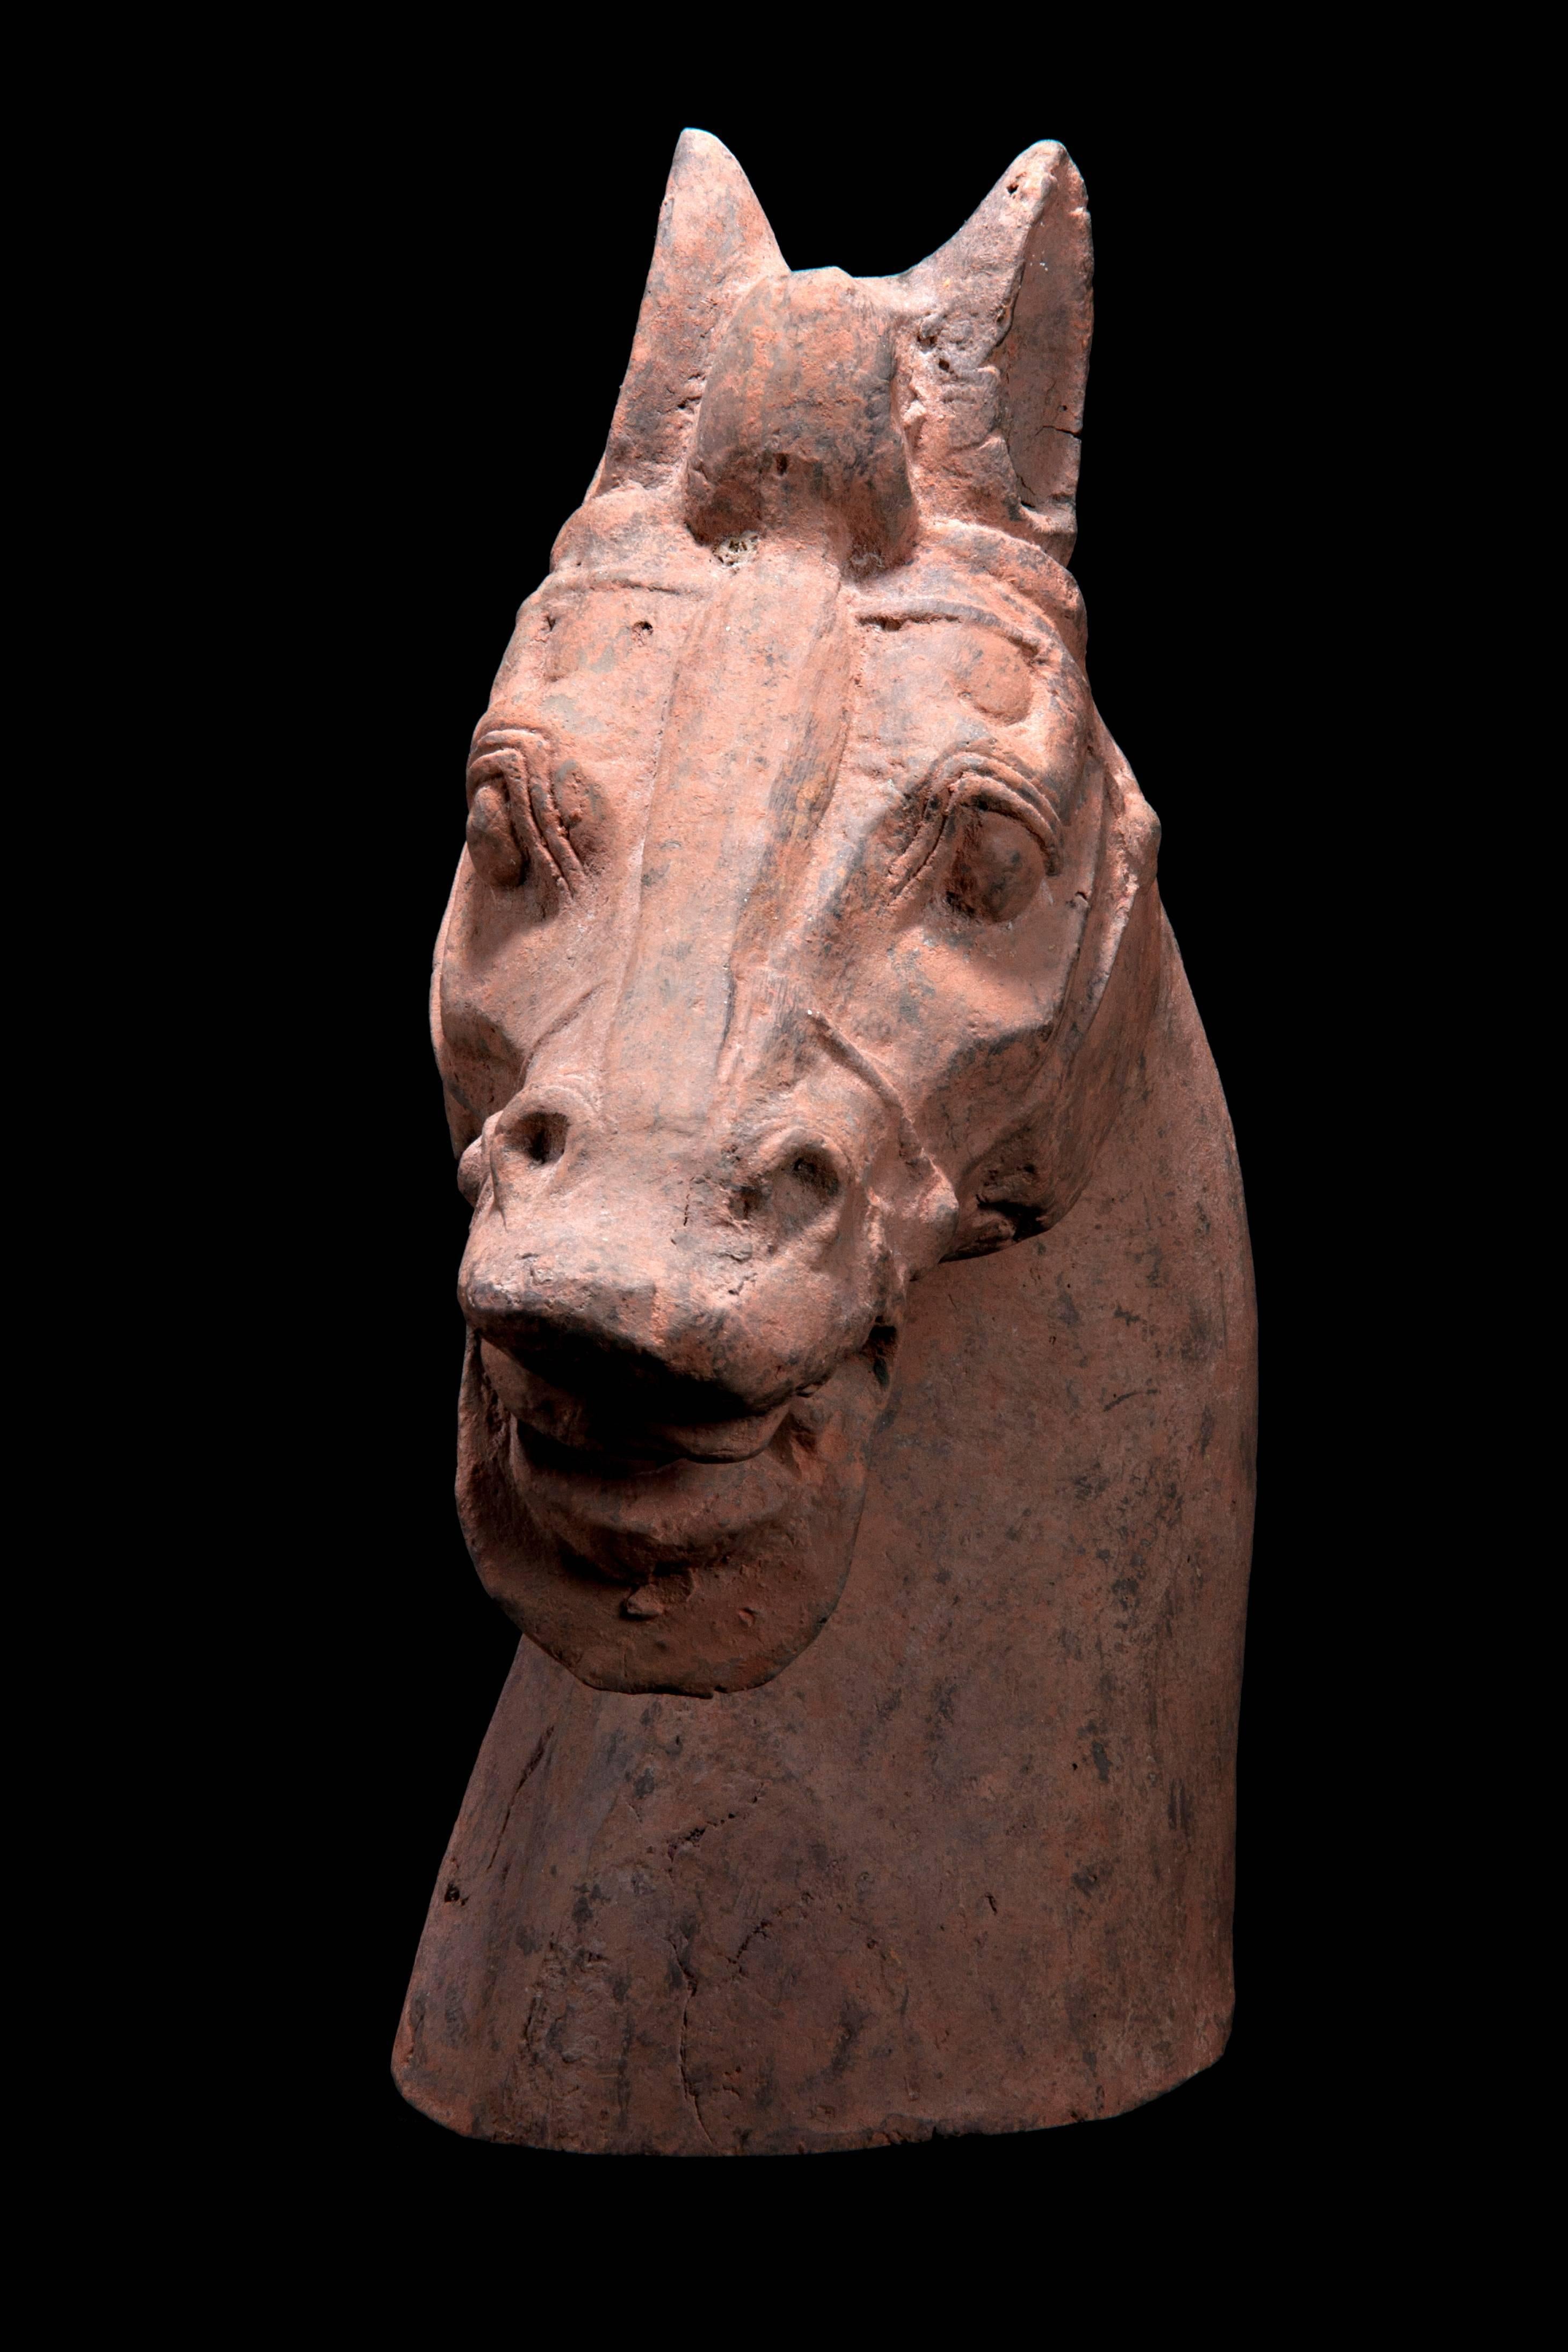 Ein massives Keramikpferd mit separat angefertigtem Kopf und Schwanz, das auf allen Vieren steht und mit dem rechten Huf nach vorne schreitet. Die verlängerte Schnauze endet in gespaltenen Lippen, unter denen die Zähne in einer brüllenden Haltung zu